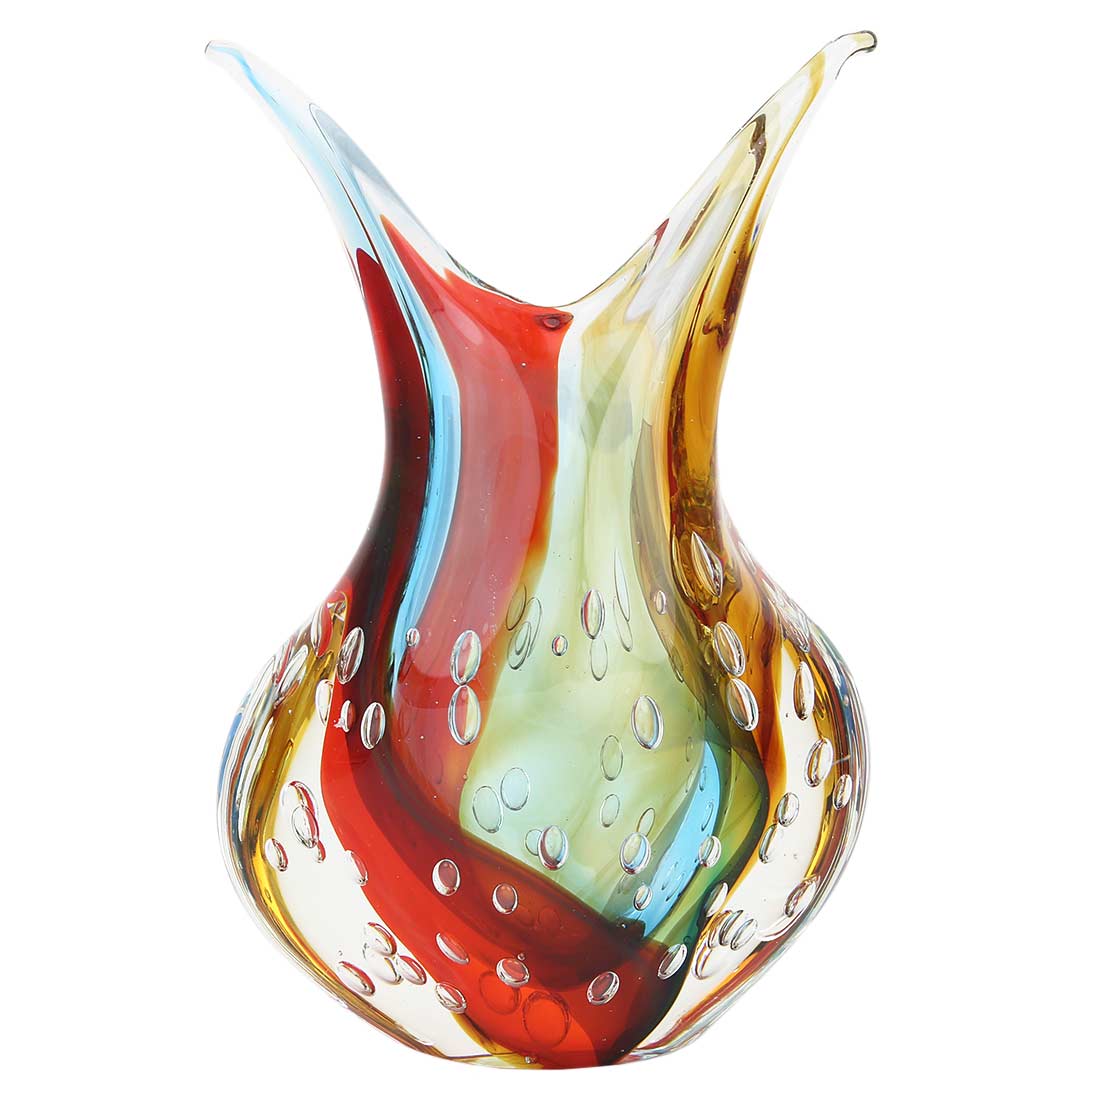 Murano Art Glass Sommerso Vase - Venetian Sunrise